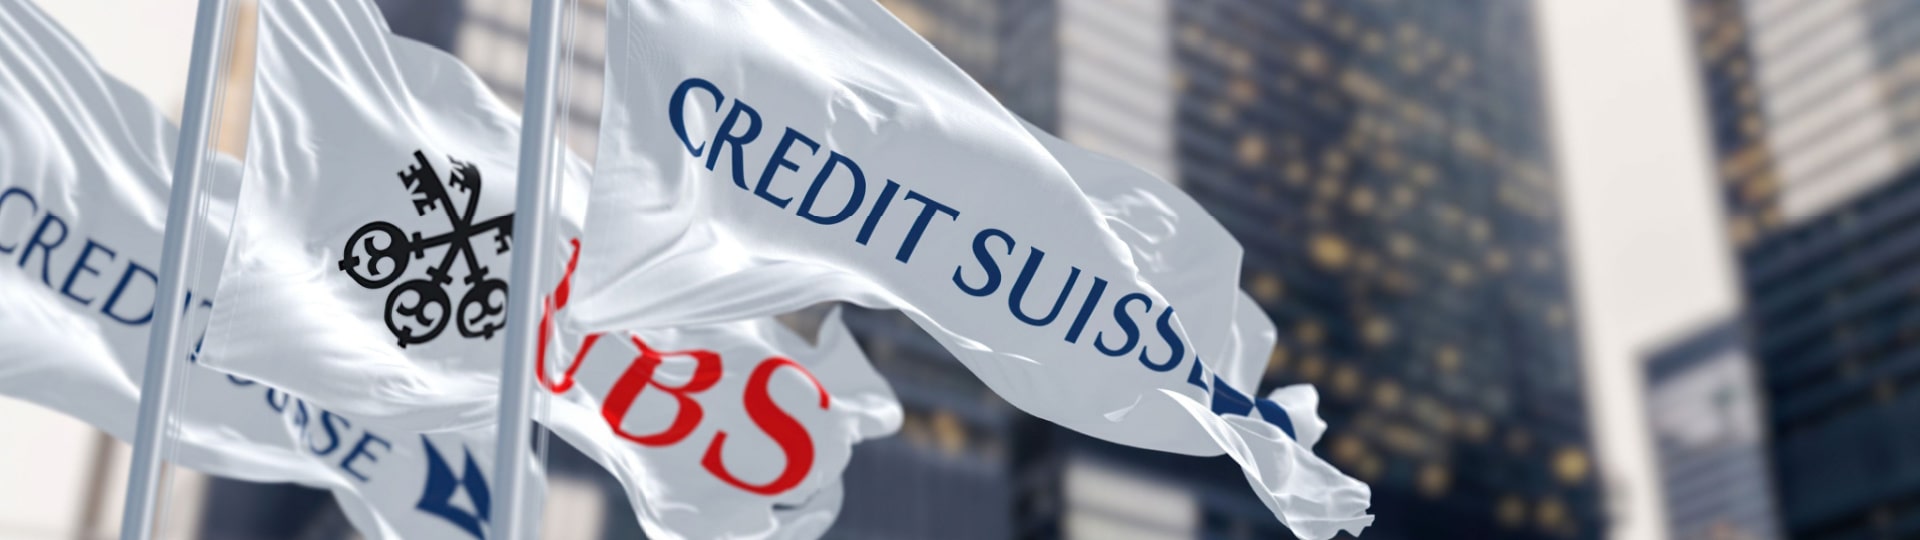 Švýcarská banka UBS měla rekordní zisk